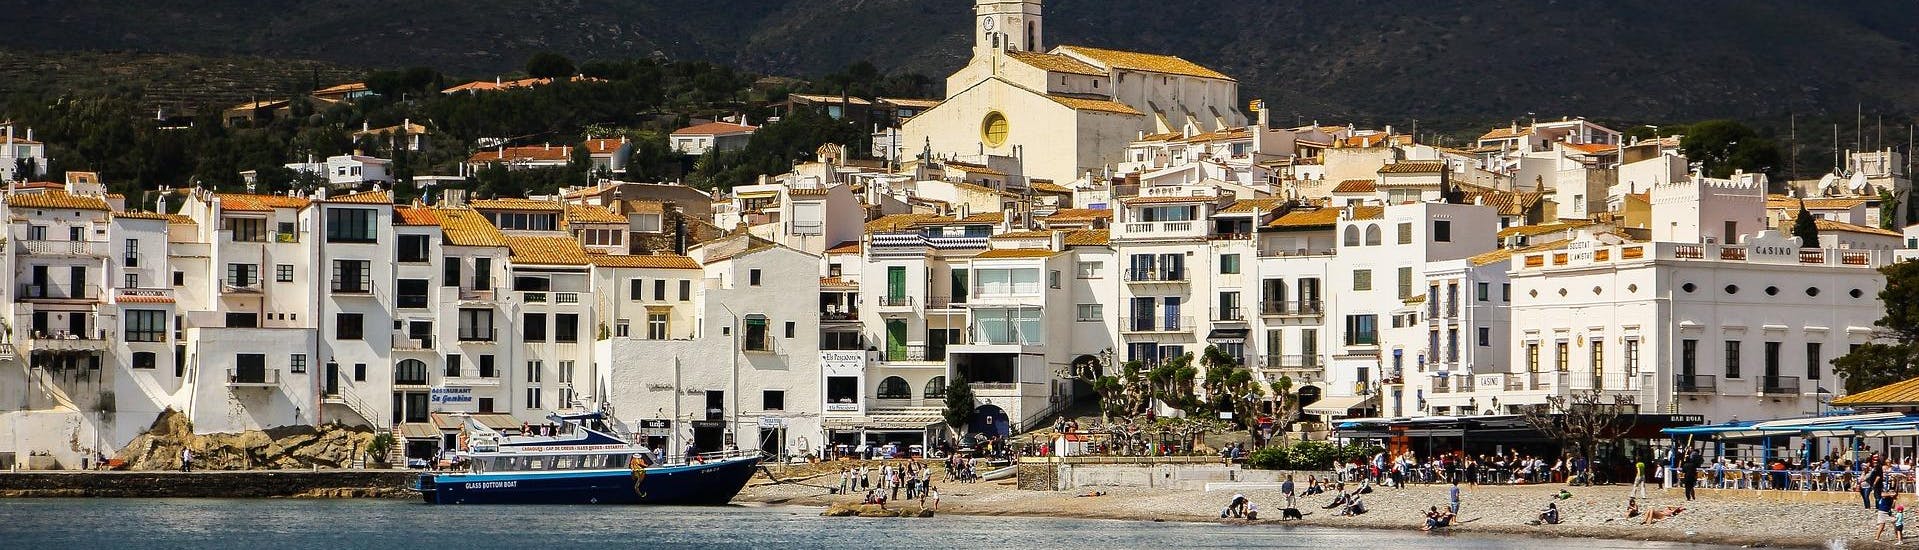 Vue de la côte lors d'une excursion en bateau à Cadaqués.